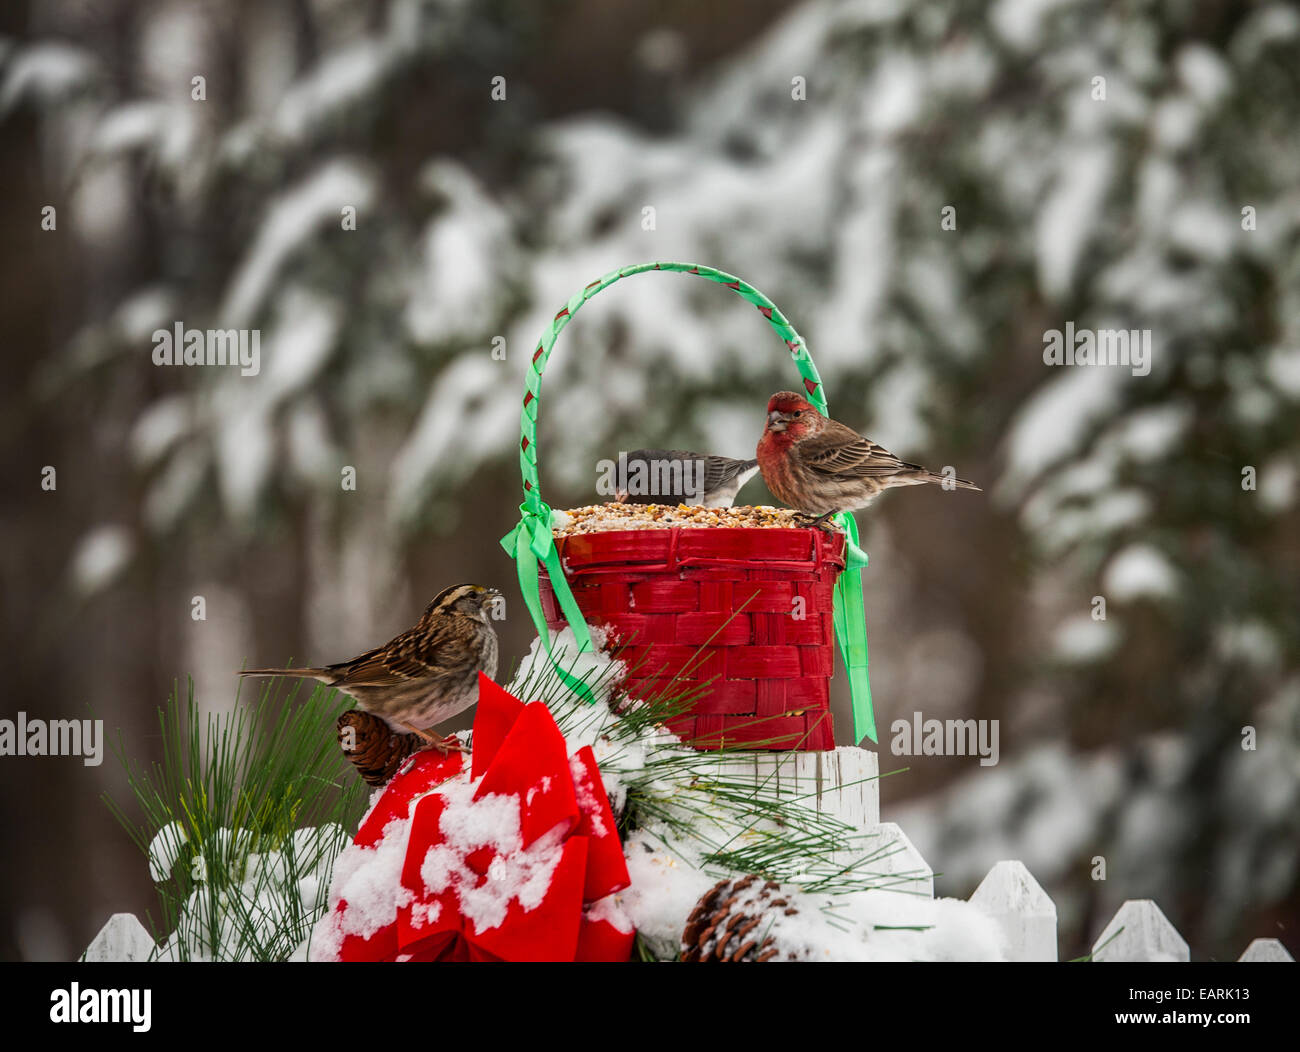 Jardin en gros plan coloré oiseaux d'hiver mignons, oiseaux rouges de Noël sur une clôture, tempête de neige d'hiver, New Jersey, États-Unis, États-Unis, Mangeoire à oiseaux de Noël Banque D'Images